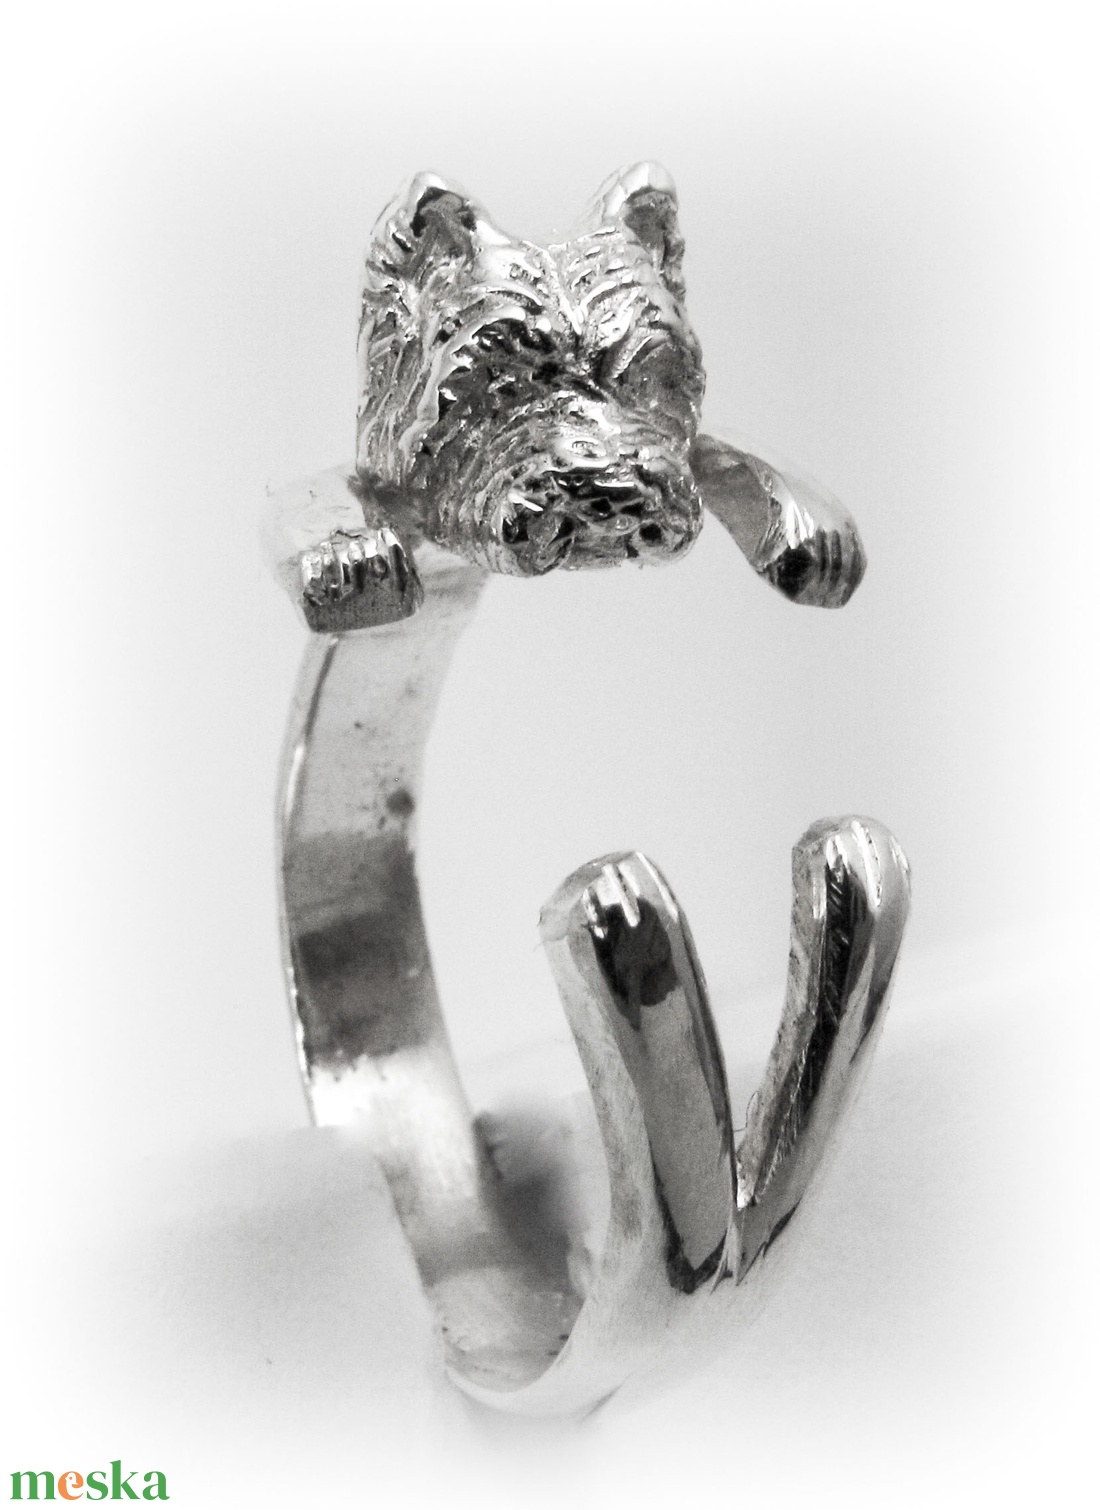 Ezüst/14K-os arany Westie gyűrű - ékszer - gyűrű - figurális gyűrű - Meska.hu